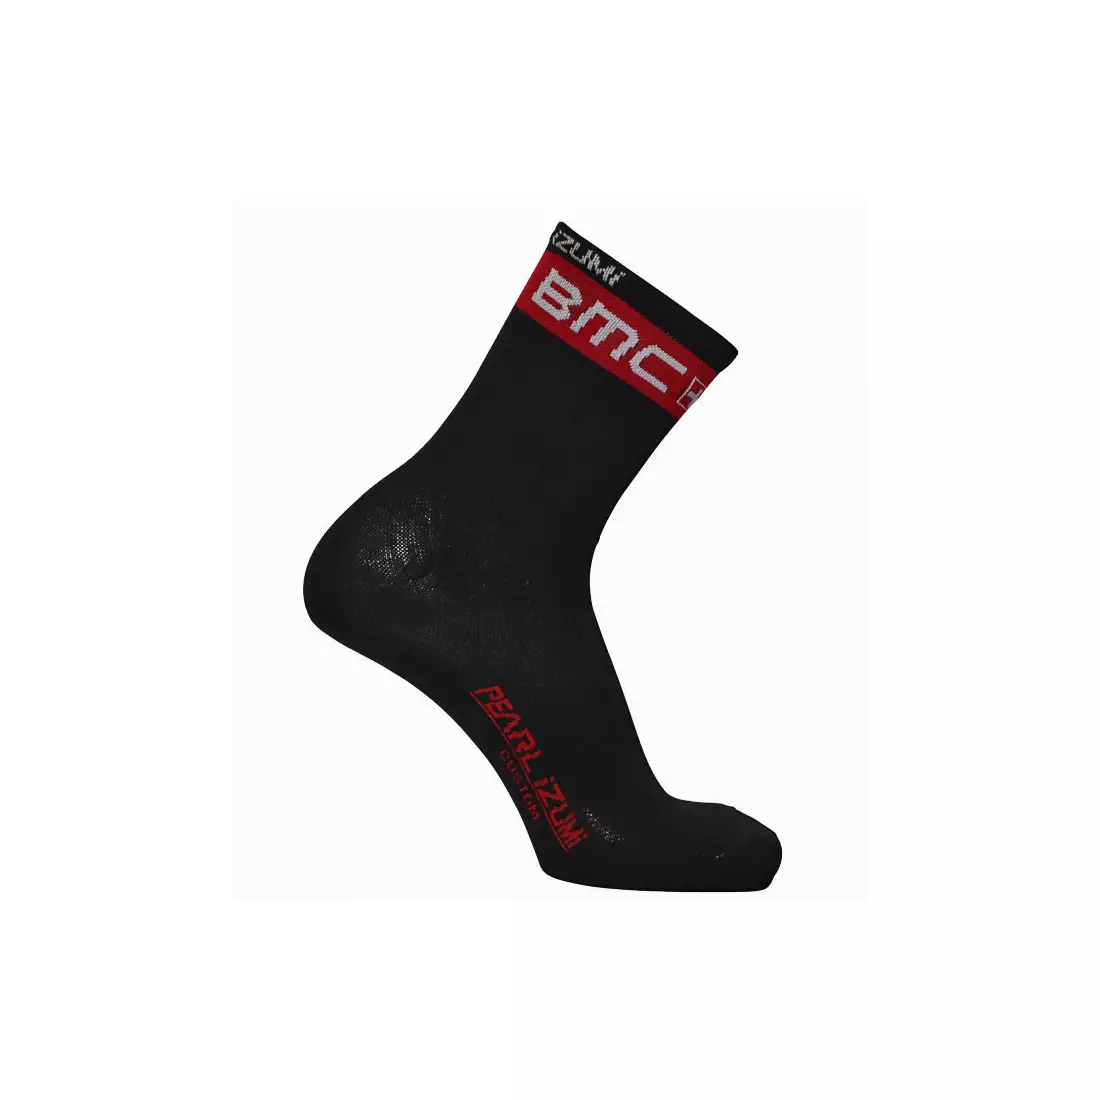 PEARL IZUMI ELITE BMC team cycling socks CA045